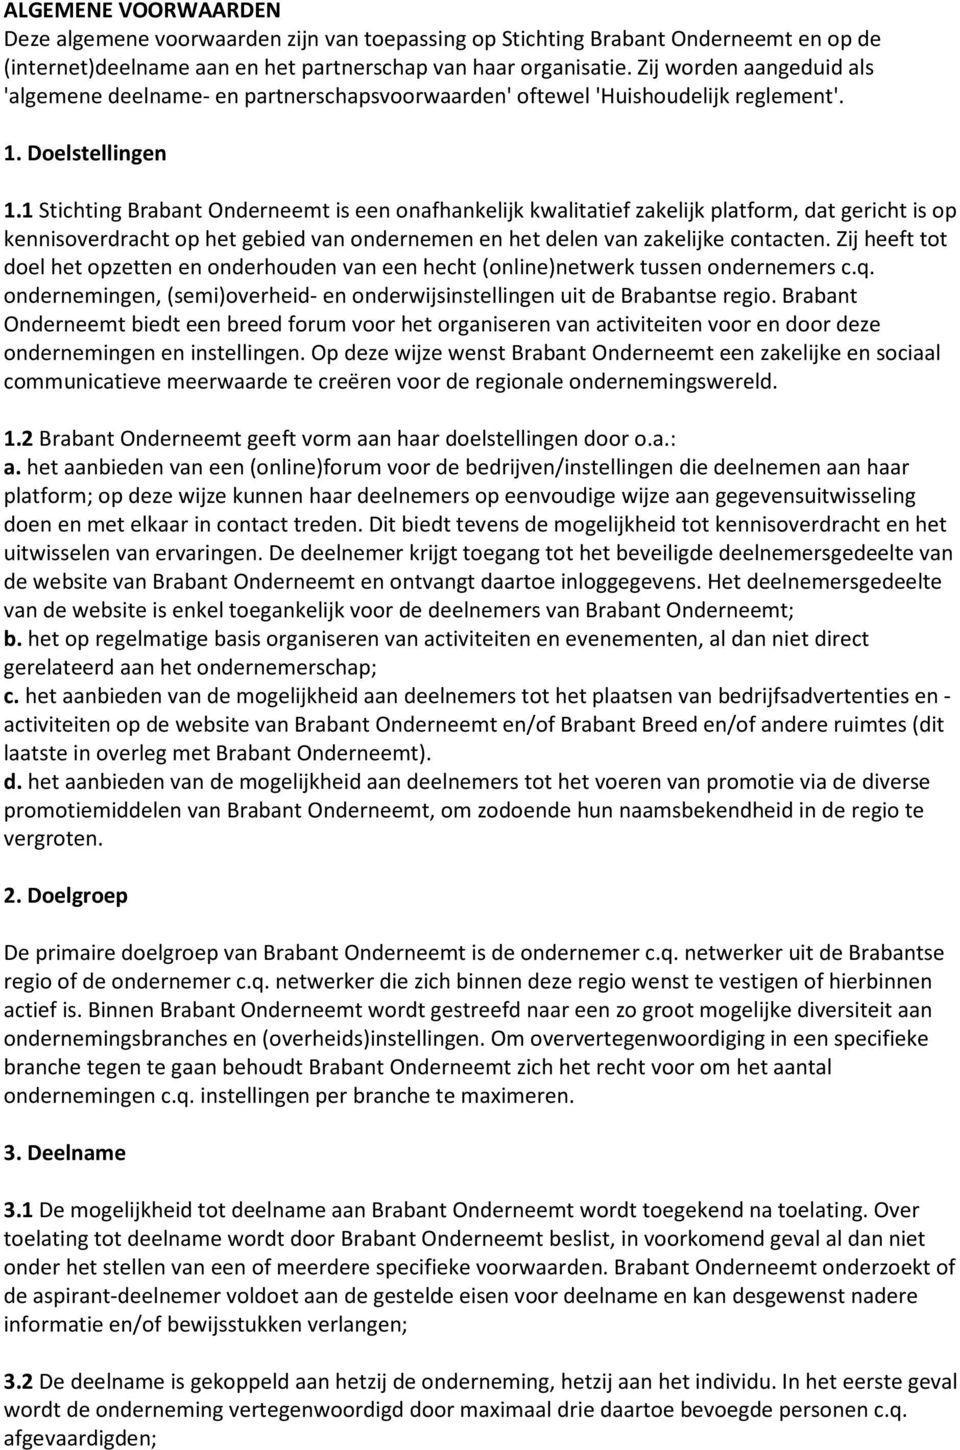 1 Stichting Brabant Onderneemt is een onafhankelijk kwalitatief zakelijk platform, dat gericht is op kennisoverdracht op het gebied van ondernemen en het delen van zakelijke contacten.